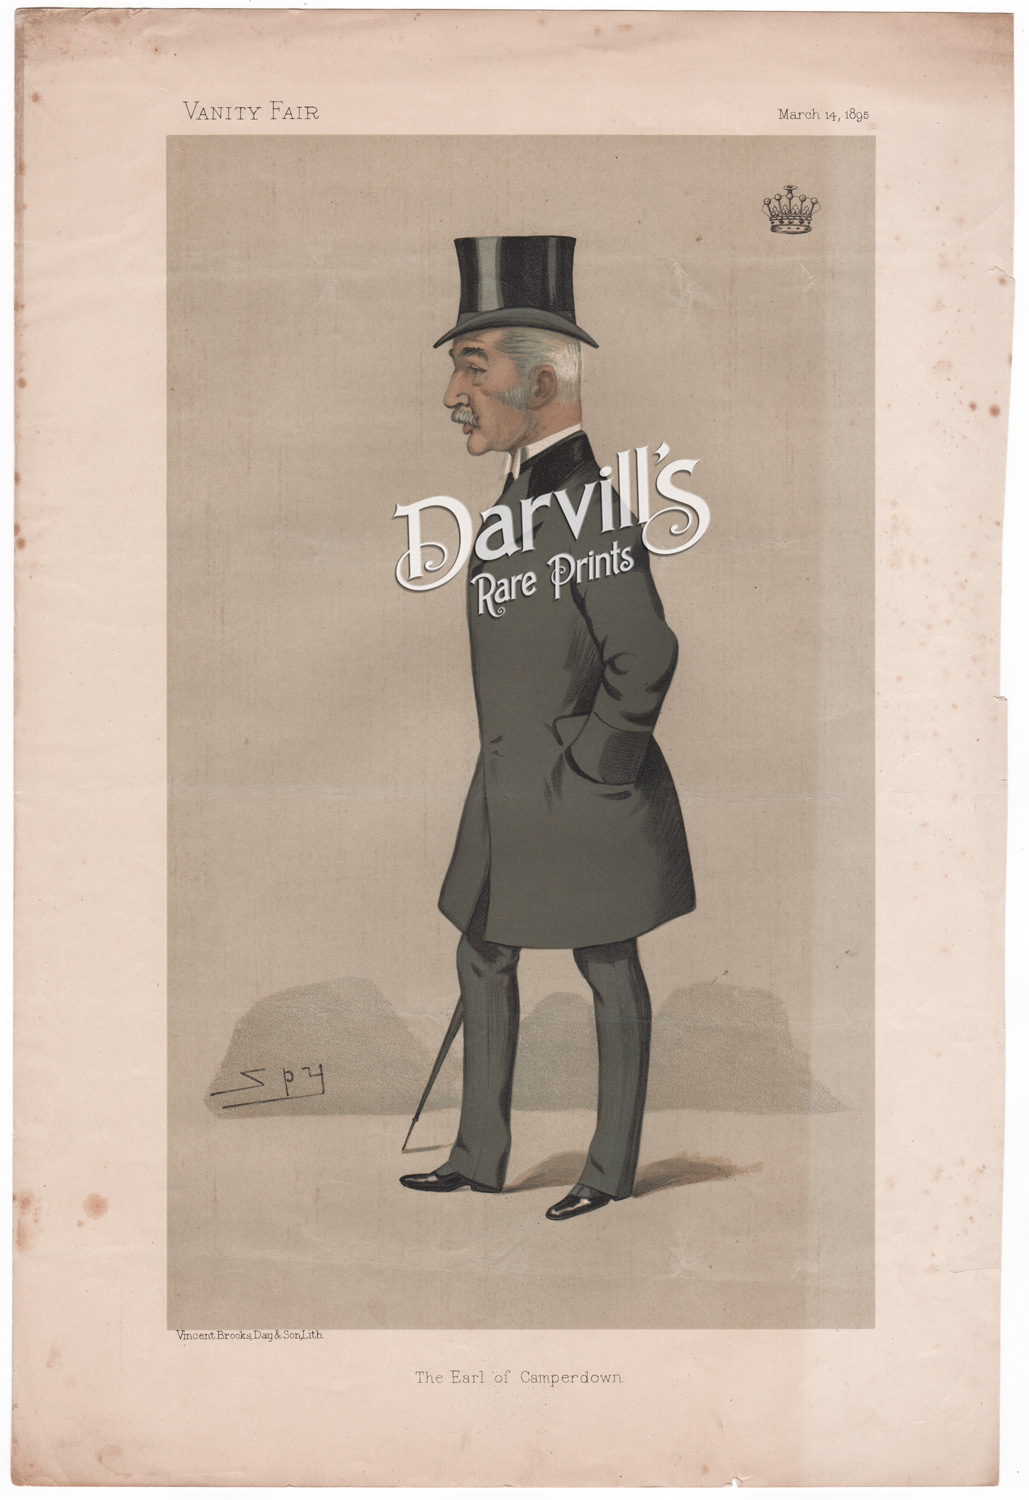 The Earl of Camperdown
[Robert Adam Philips Haldane Duncan]
March 14, 1895 